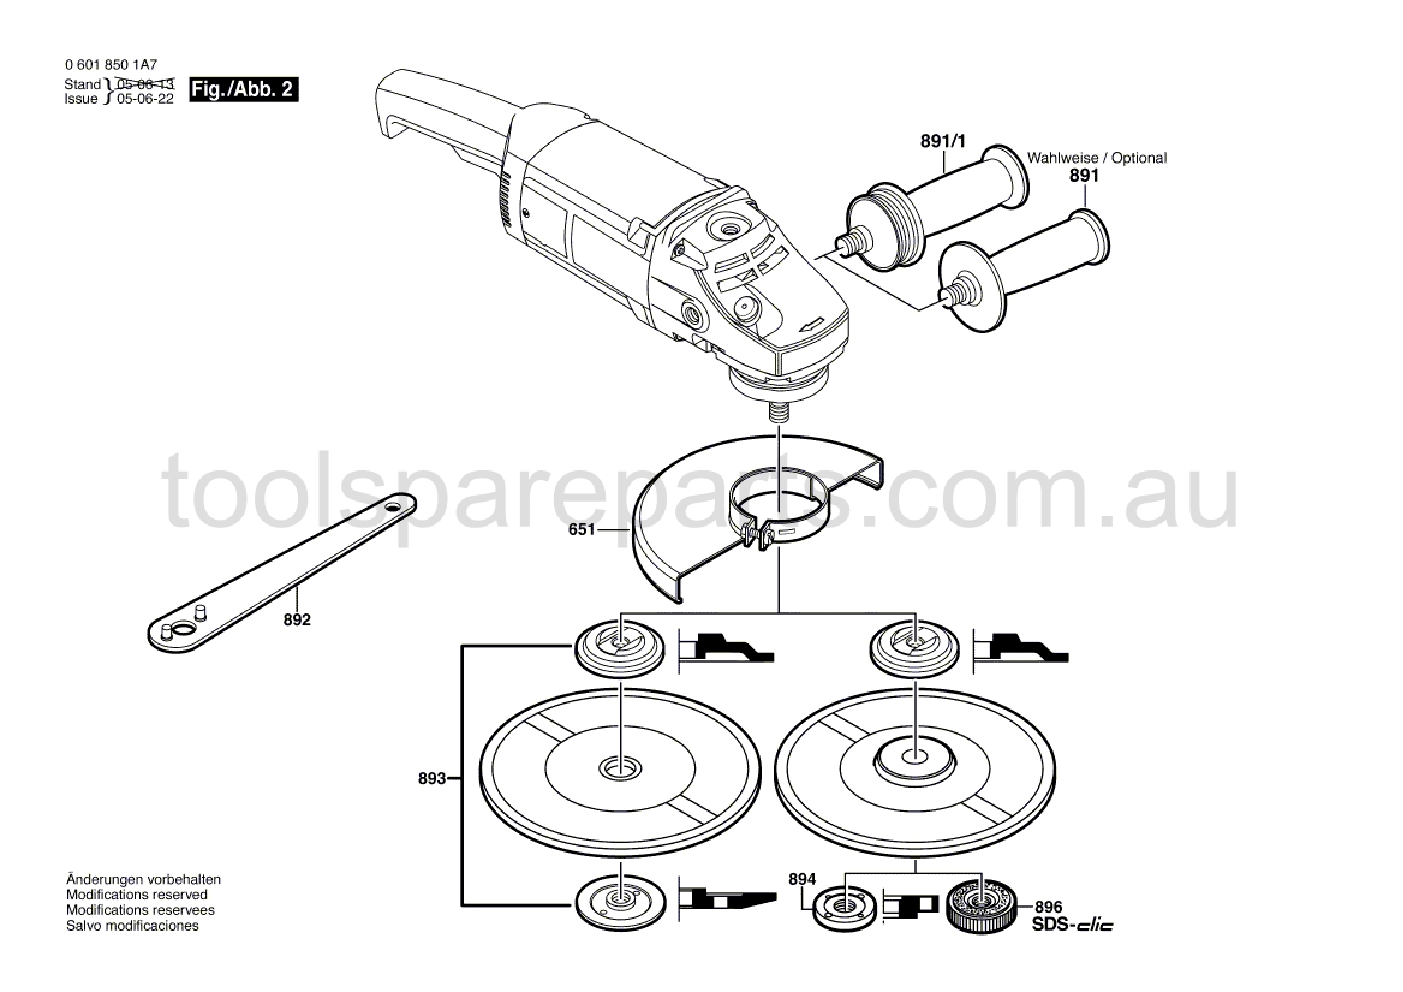 Bosch GWS 20-230 06018501A7  Diagram 2